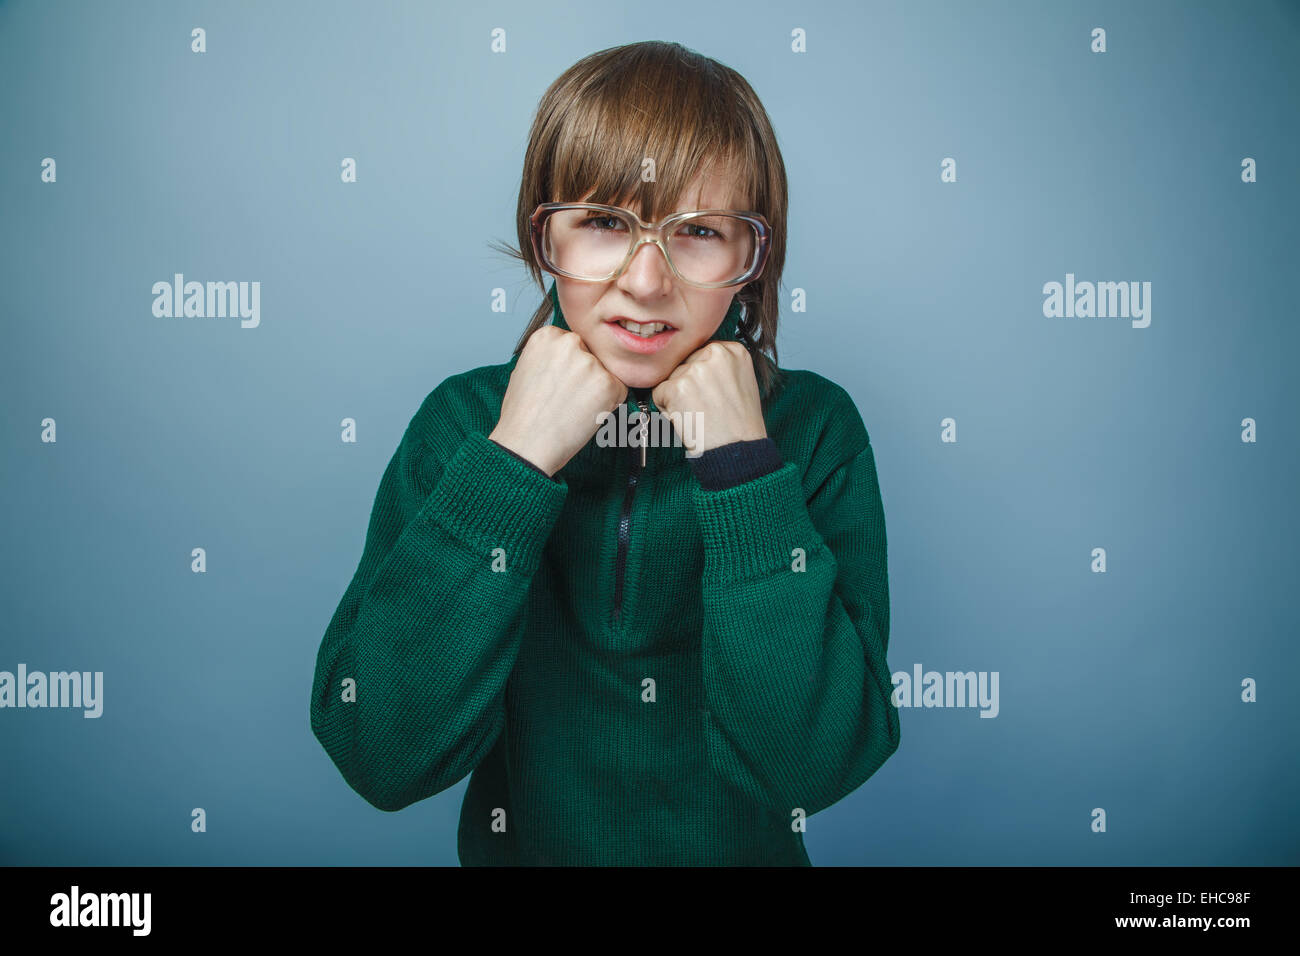 Ragazzo adolescente marrone capelli aspetto europeo in maglione verde ret Foto Stock